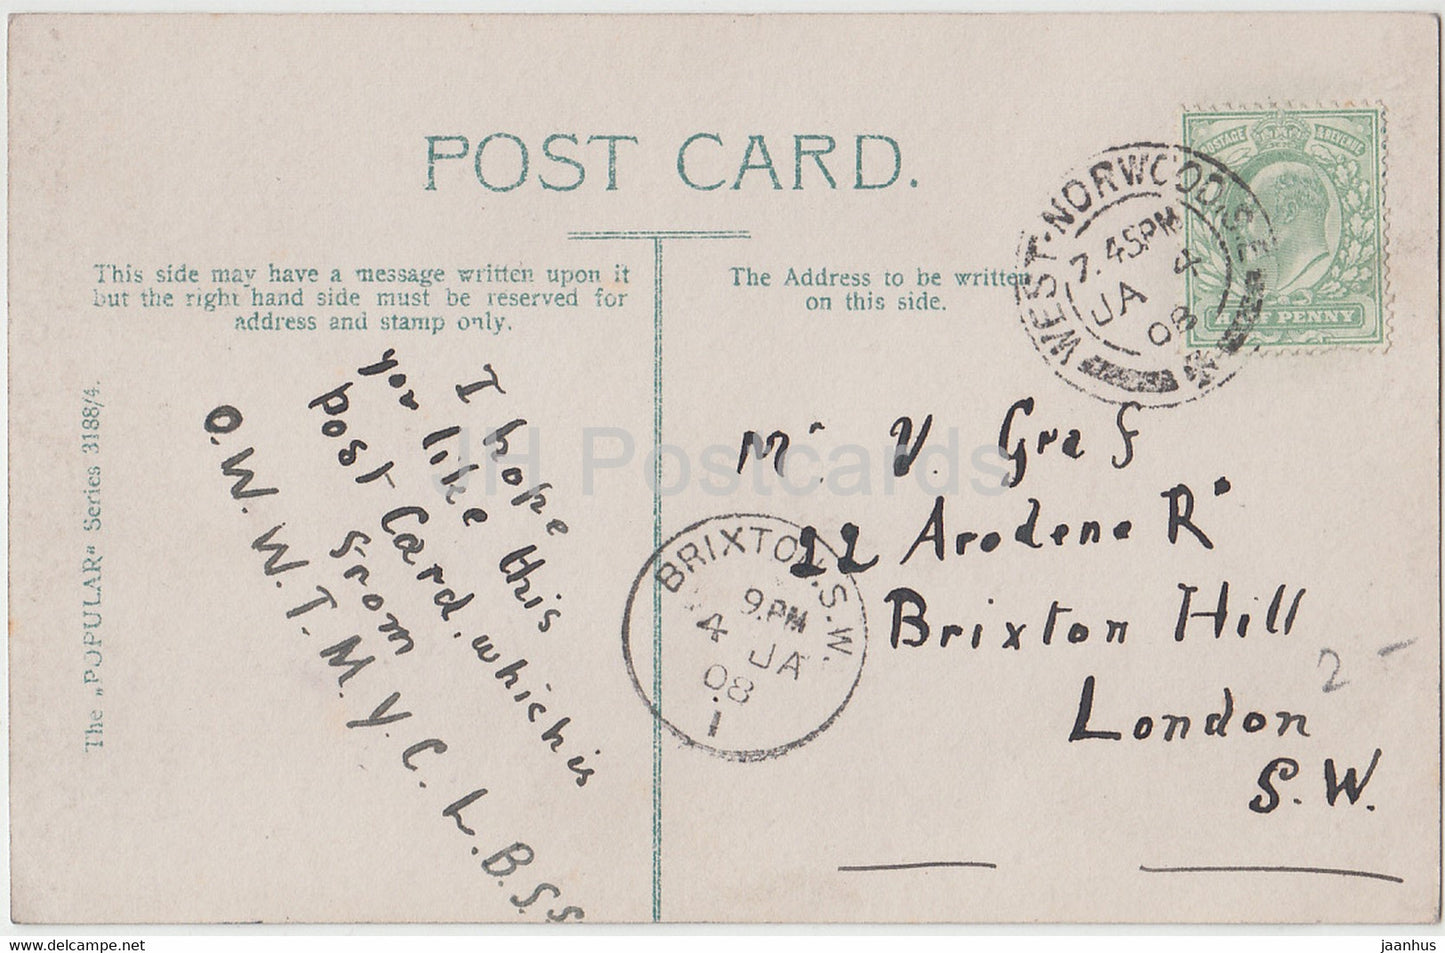 rote Nelke - Blumen - The Popular Series - 3188/4 - alte Postkarte - 1908 - Vereinigtes Königreich - gebraucht